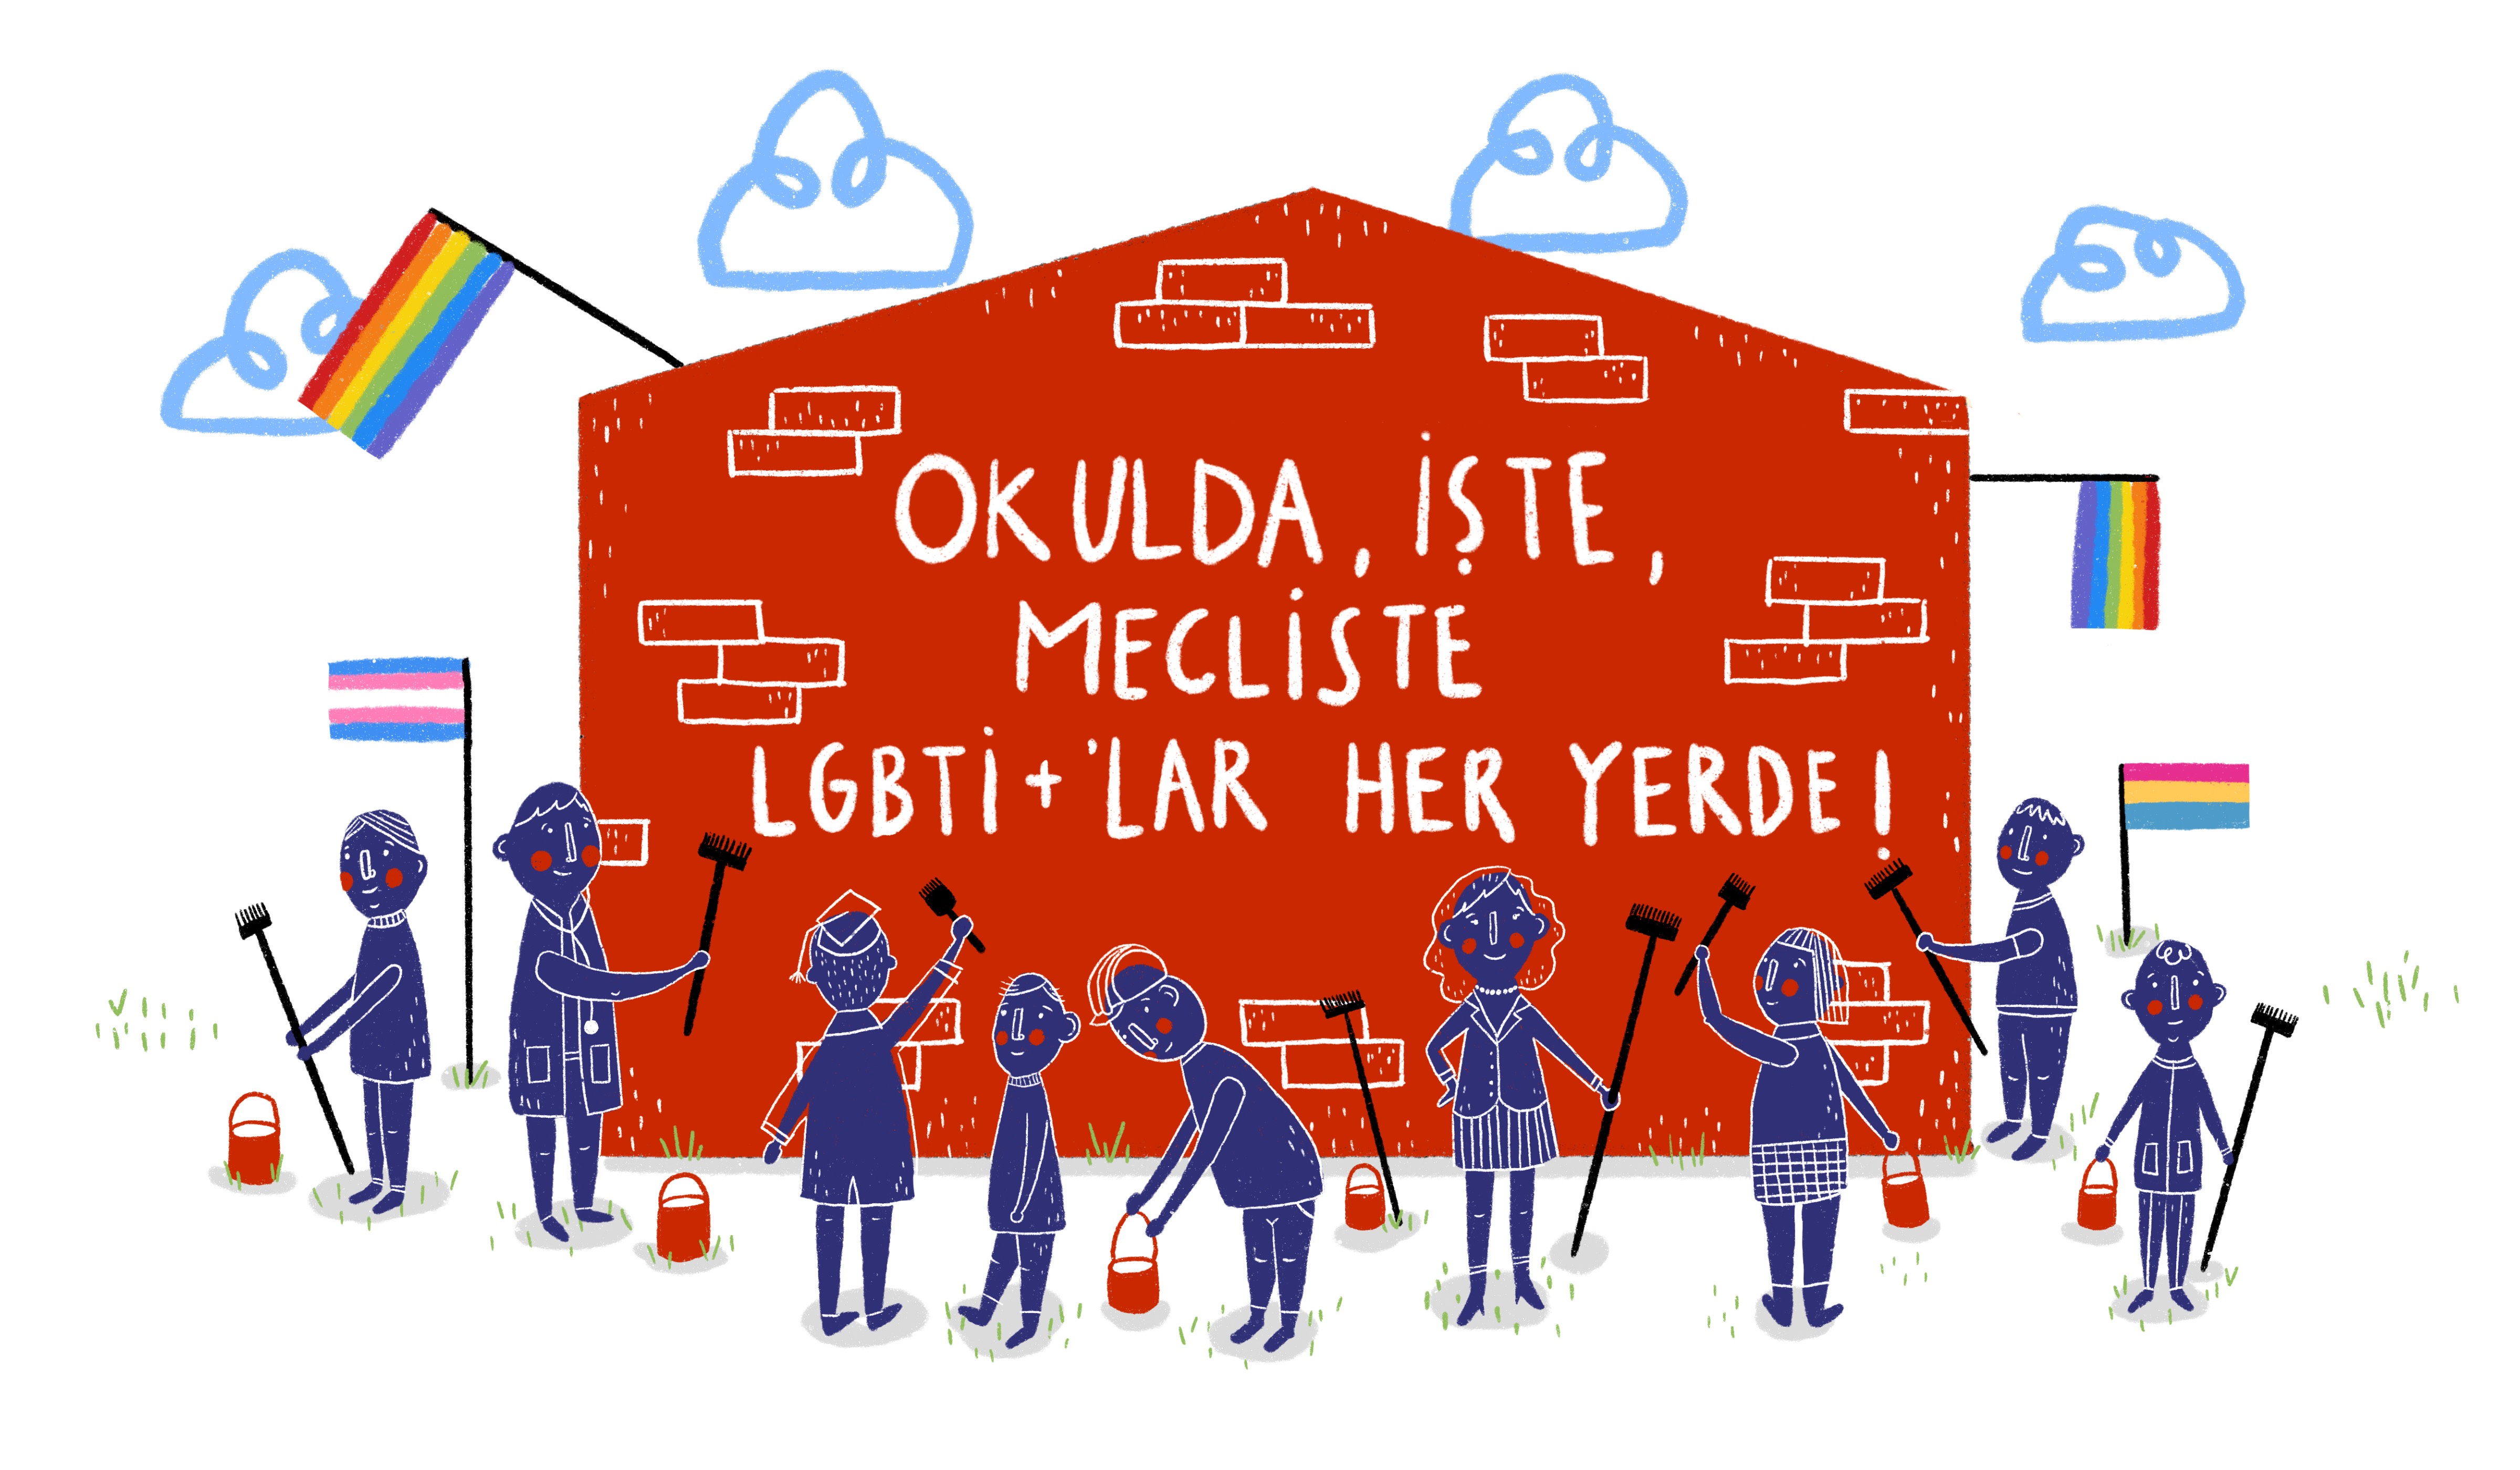 LGBTİ+'lar Meclis'te, her yerde | Kaos GL - LGBTİ+ Haber Portalı Gökkuşağı Forumu Köşe Yazısı